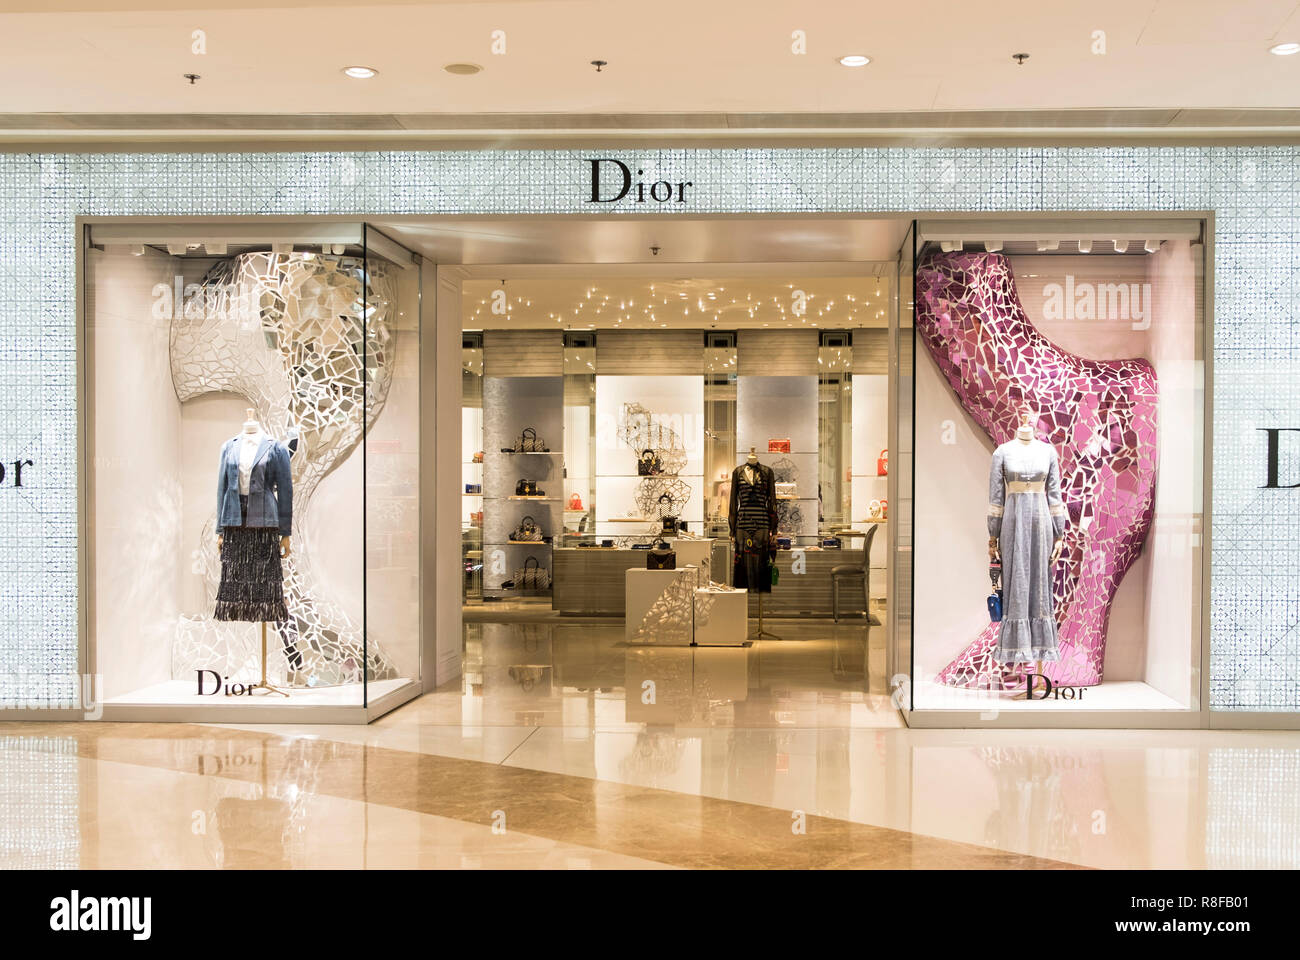 Hong Kong, April 7, 2019: Dior store in Hong Kong Stock Photo